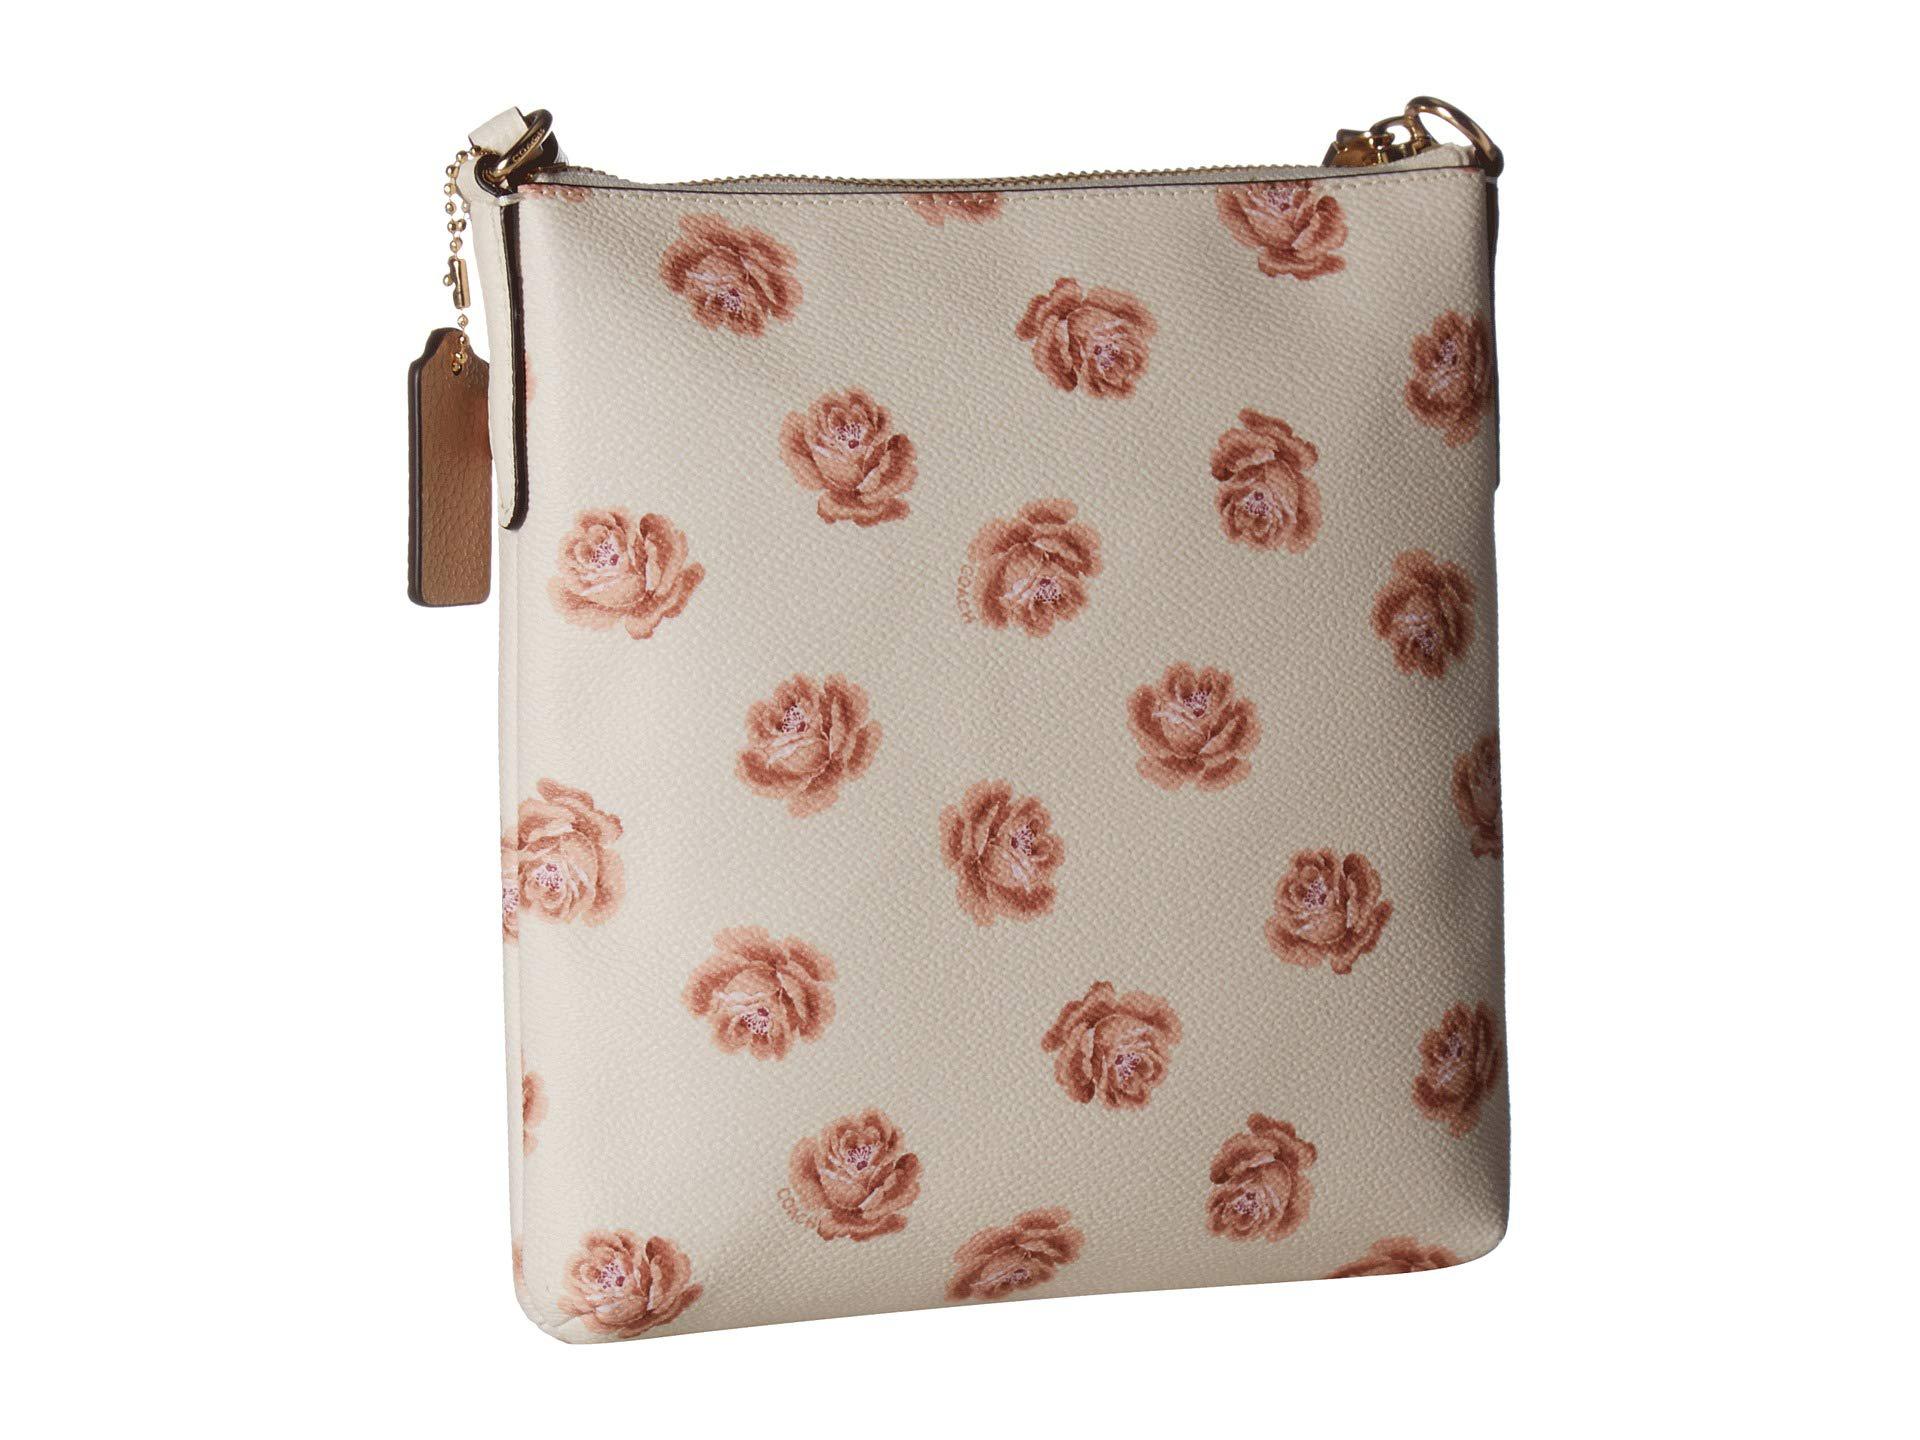 NWT Coach Signature Floral Applique Shoulderbag | Leather floral, Floral  applique, Beautiful bags